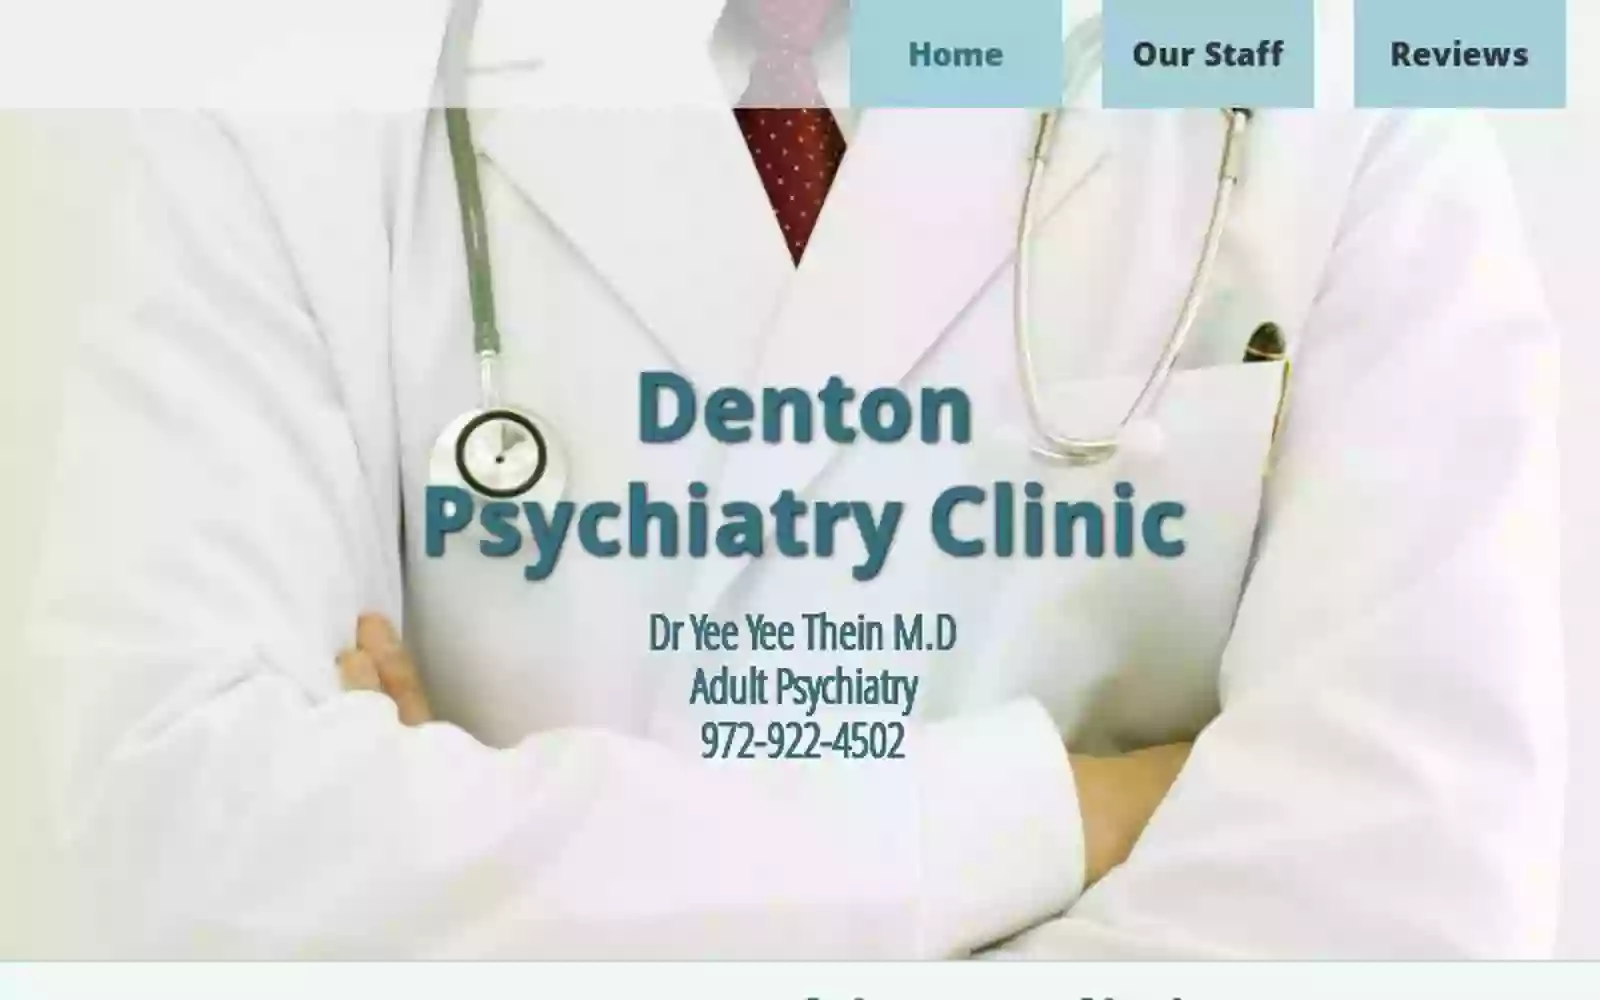 Denton Psychiatry Clinic